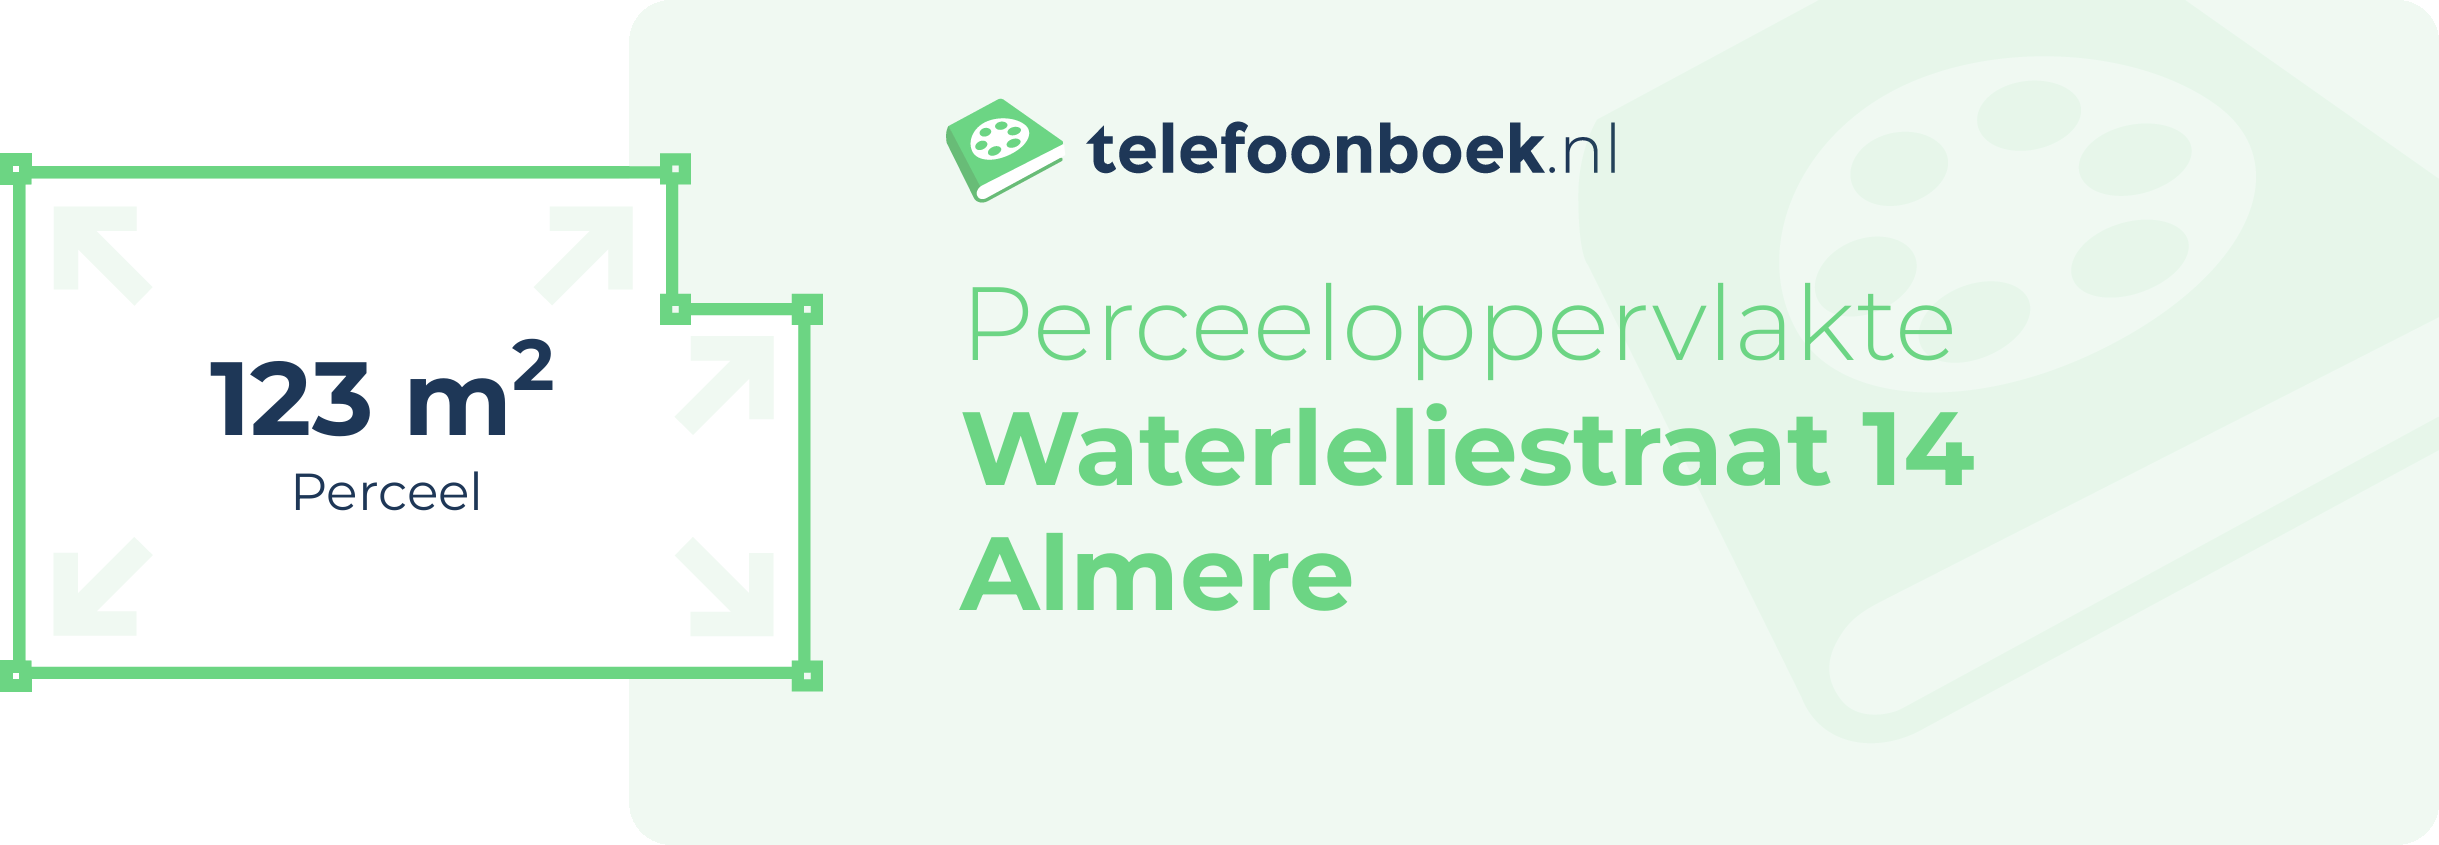 Perceeloppervlakte Waterleliestraat 14 Almere